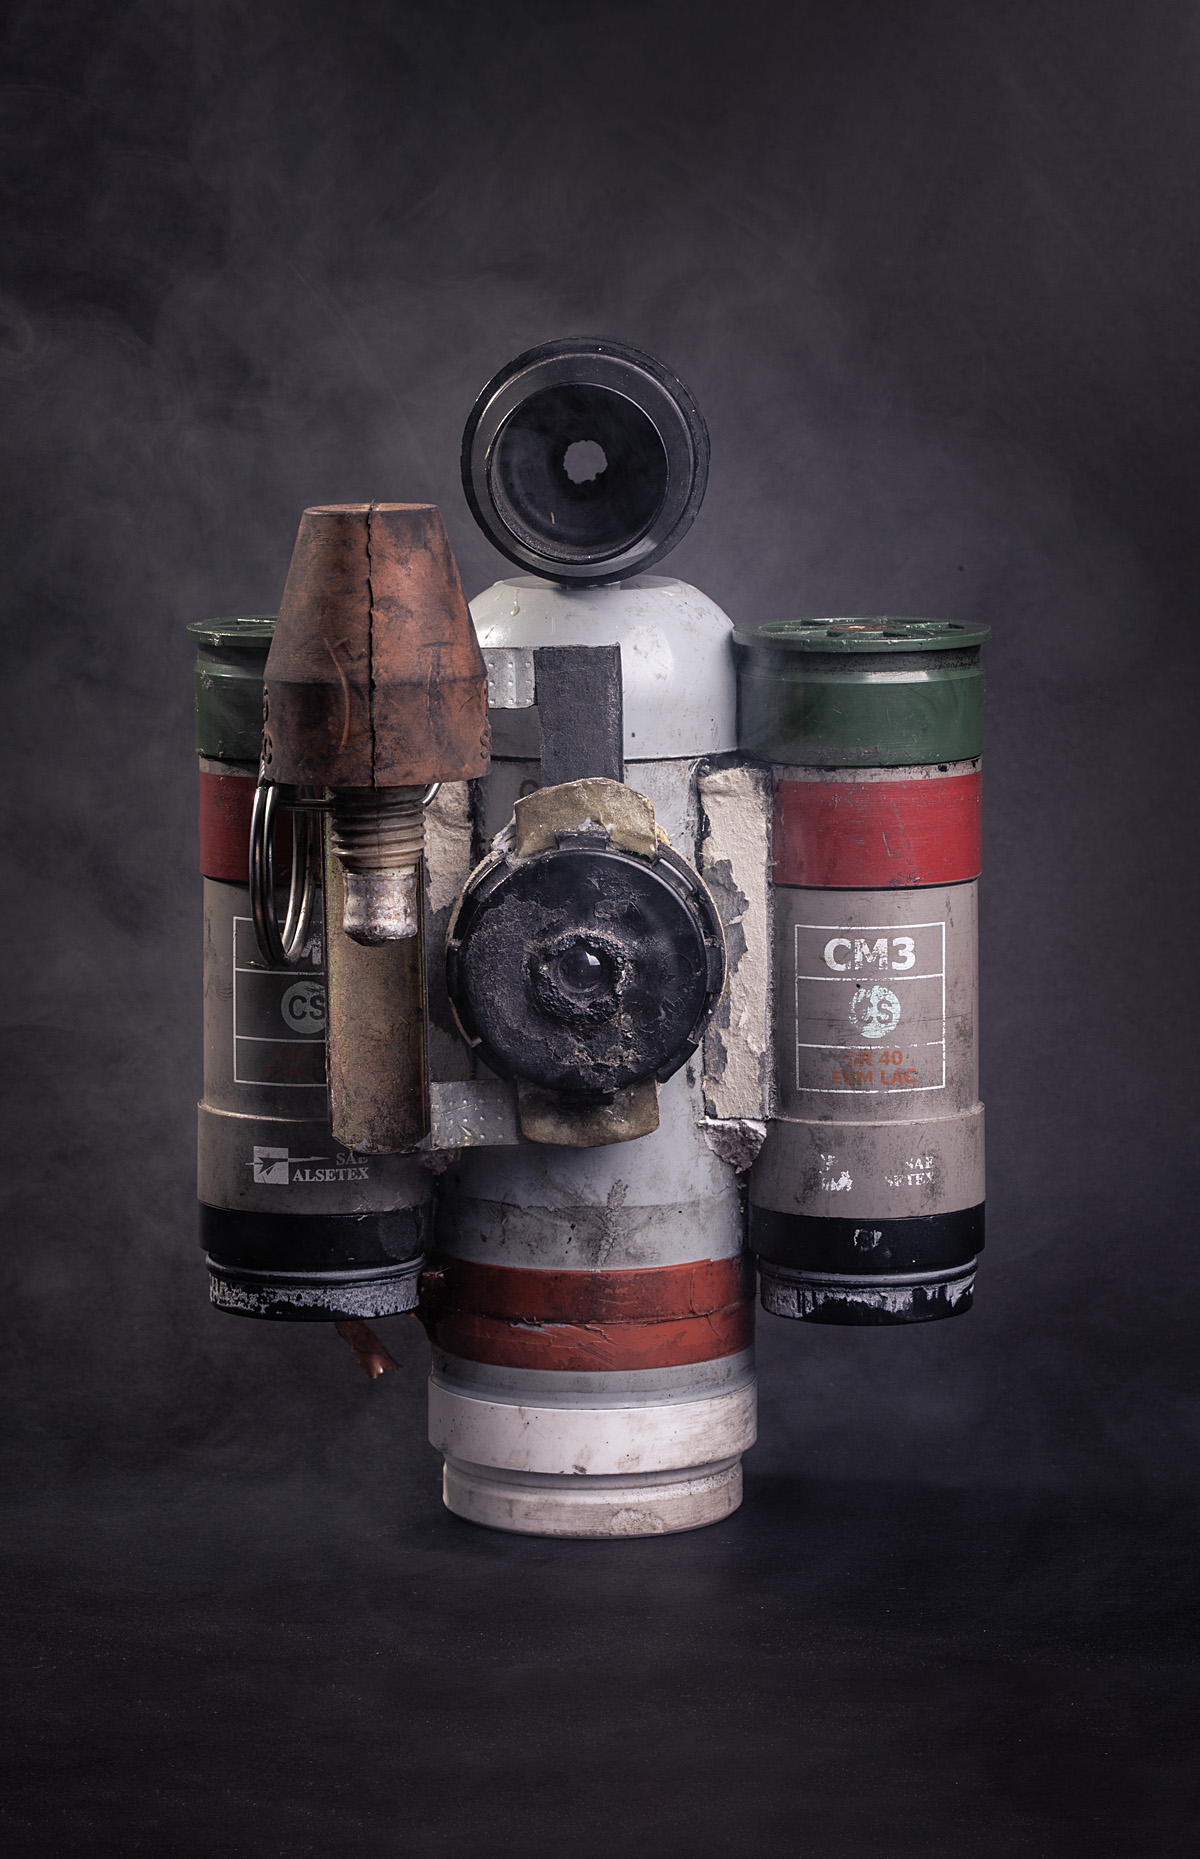 Kamera rakitan yang terbuat dari granat bekas